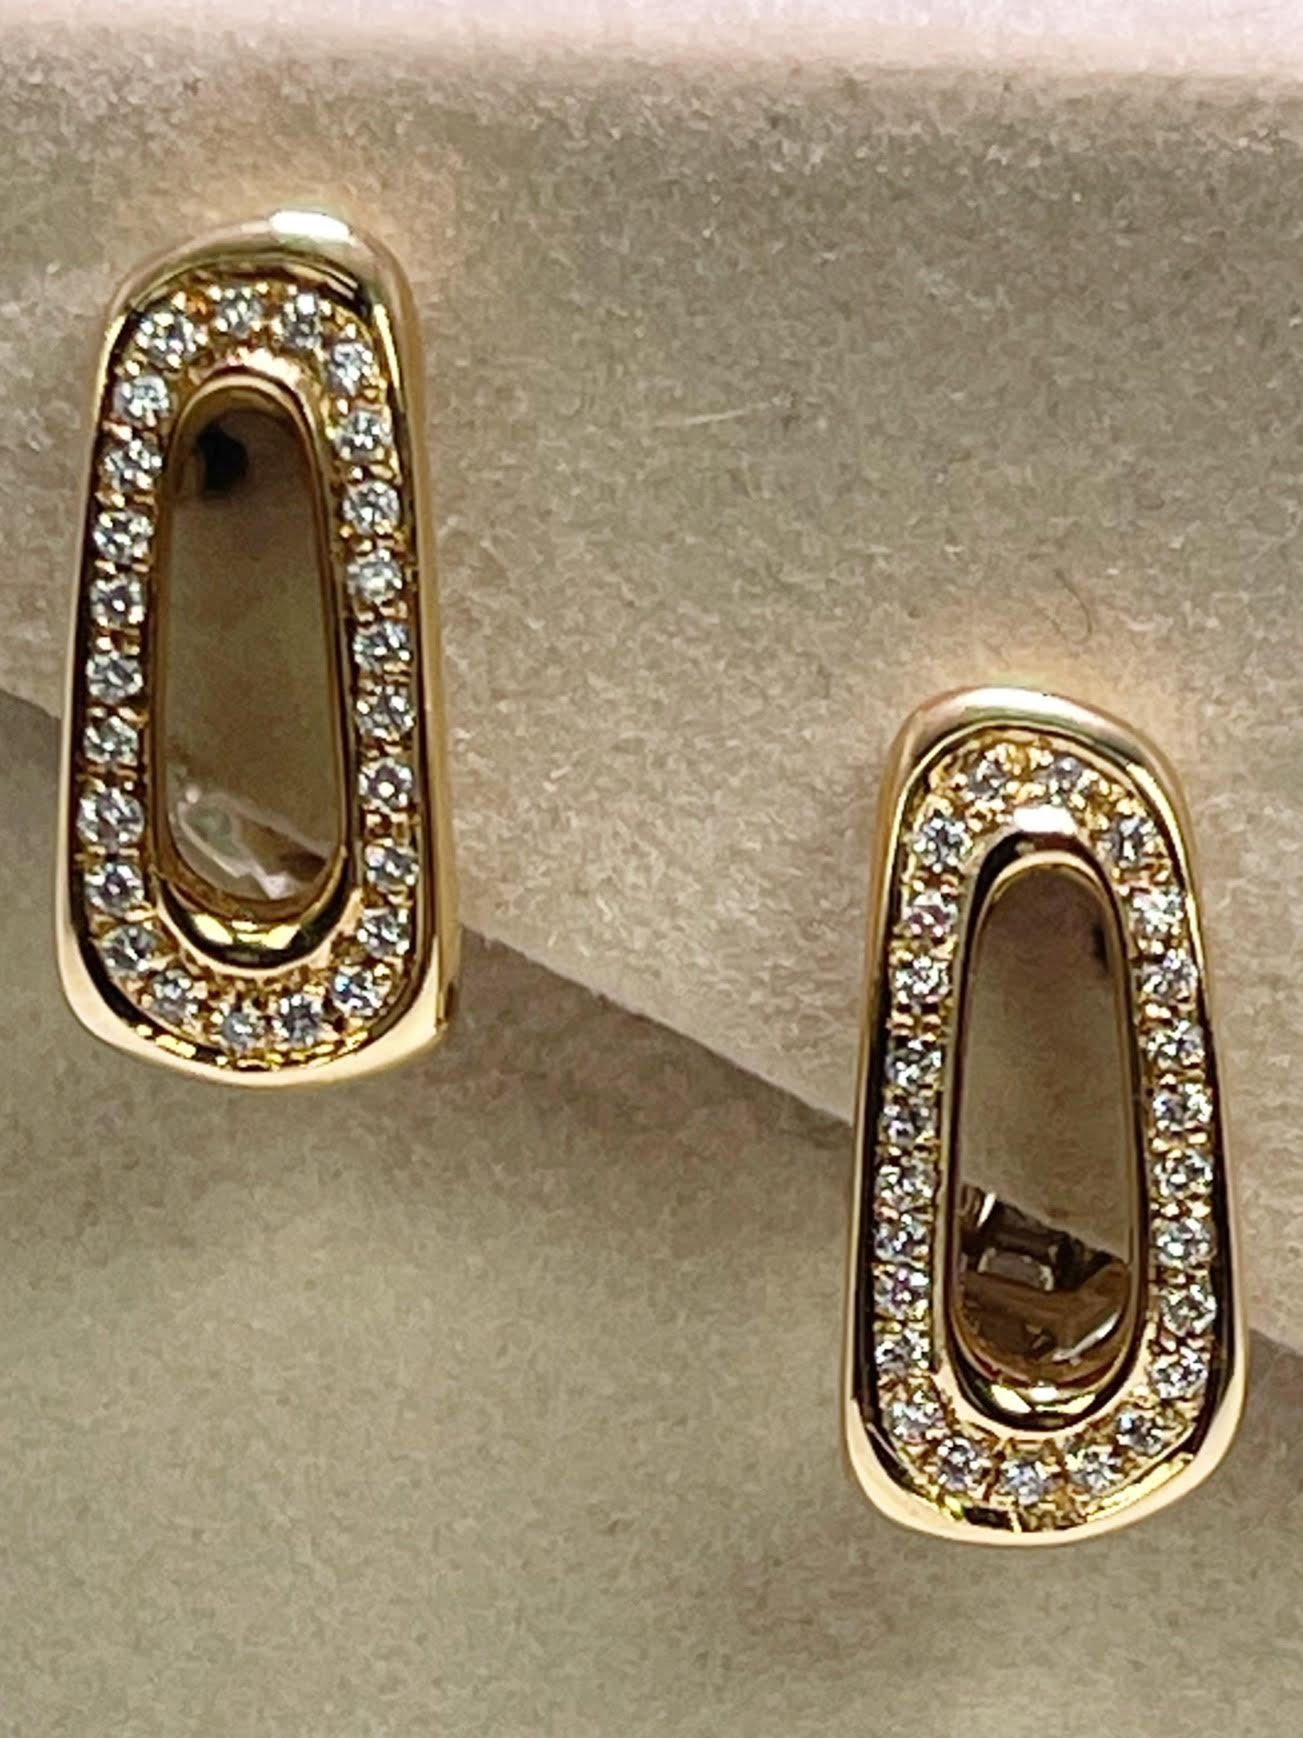 Atemberaubende Antonini Nachlass Ohrringe mit natürlichen Diamanten in 18KT Gelbgold gemacht. Die Rückseite ist ein sicherer und bequemer Omega-Verschluss.
Die Ohrringe werden mit einer Schachtel und einem Echtheitszertifikat geliefert. Die Ohrringe